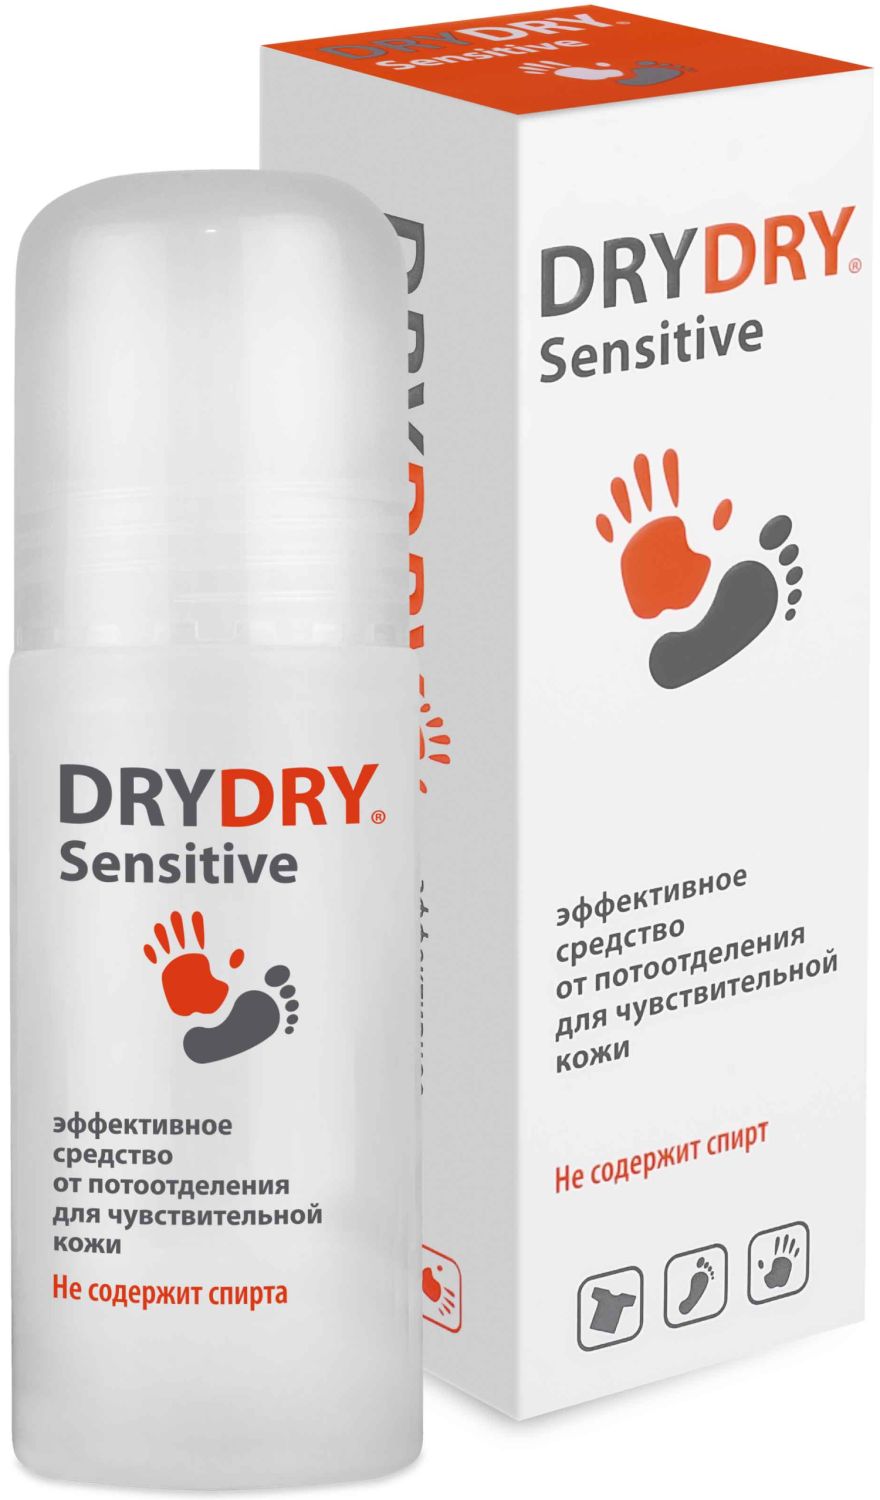 Дезодорант Dry Dry Sensitive / Драй Драй Сенситив, 50 мл. – эффективное средство от потоотделения для чувствительной кожи